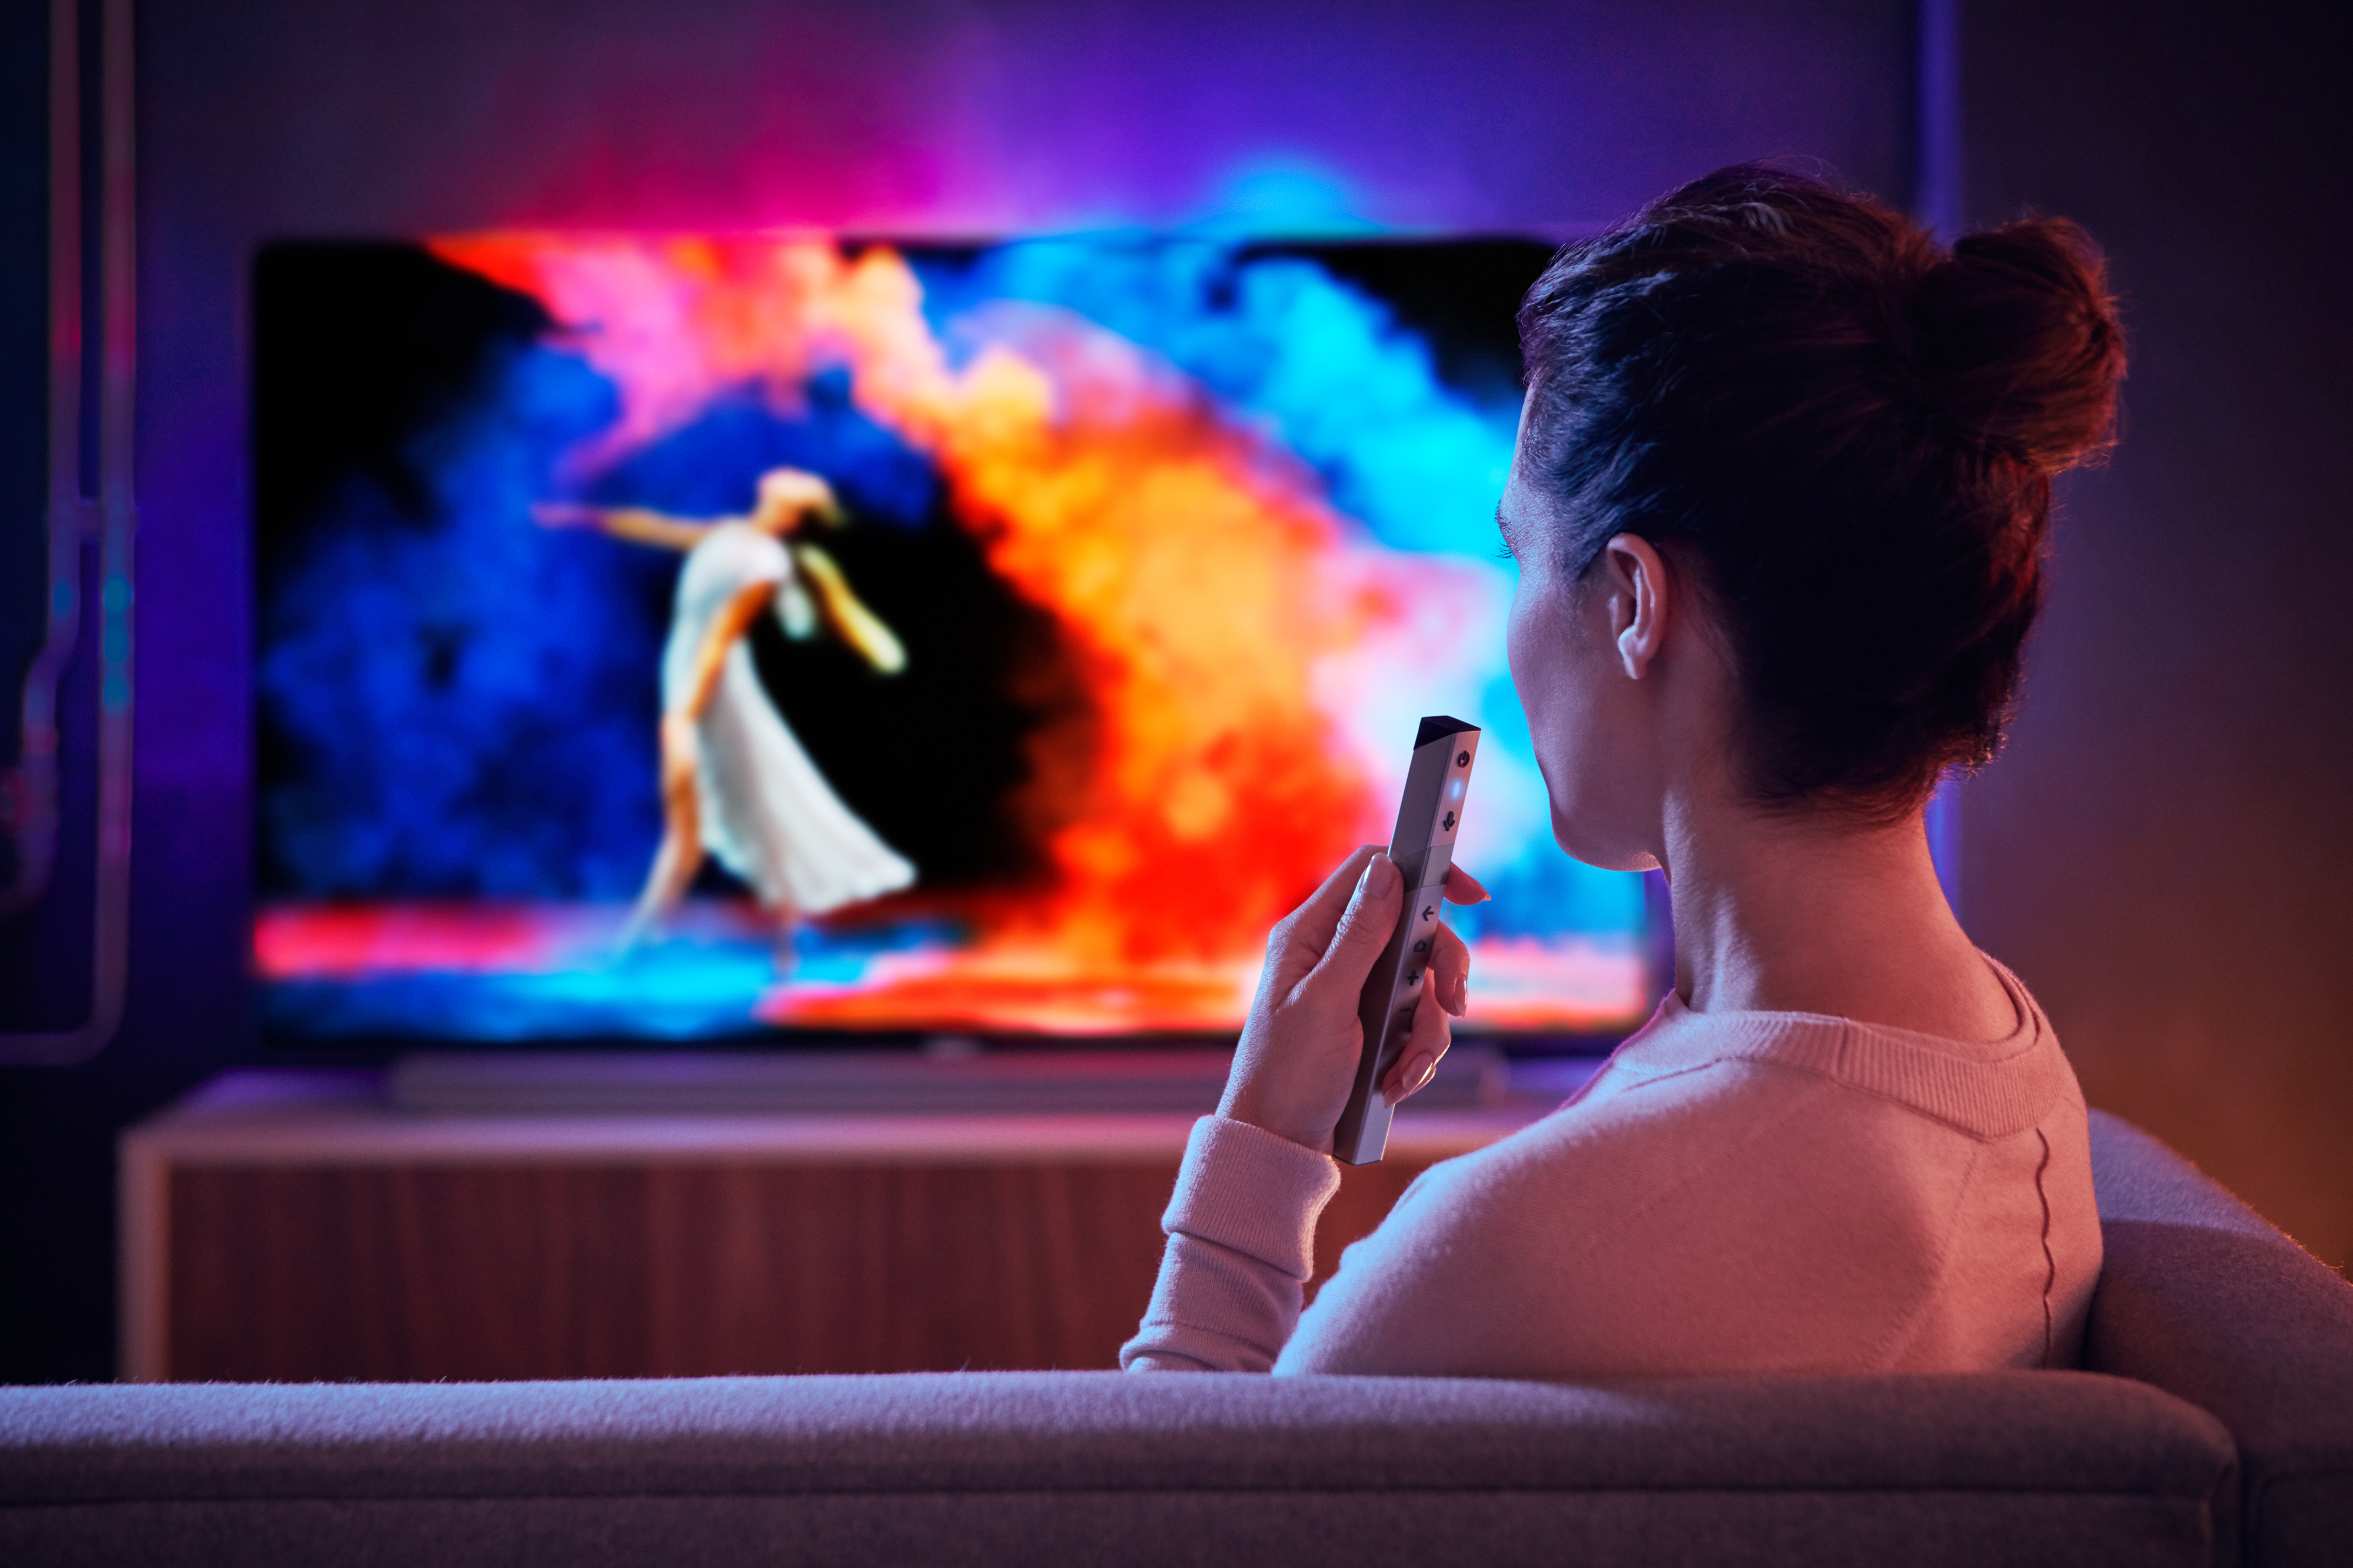 Mooi Lijken geweer On demand video stimuleert verkoop 4K televisies - Emerce